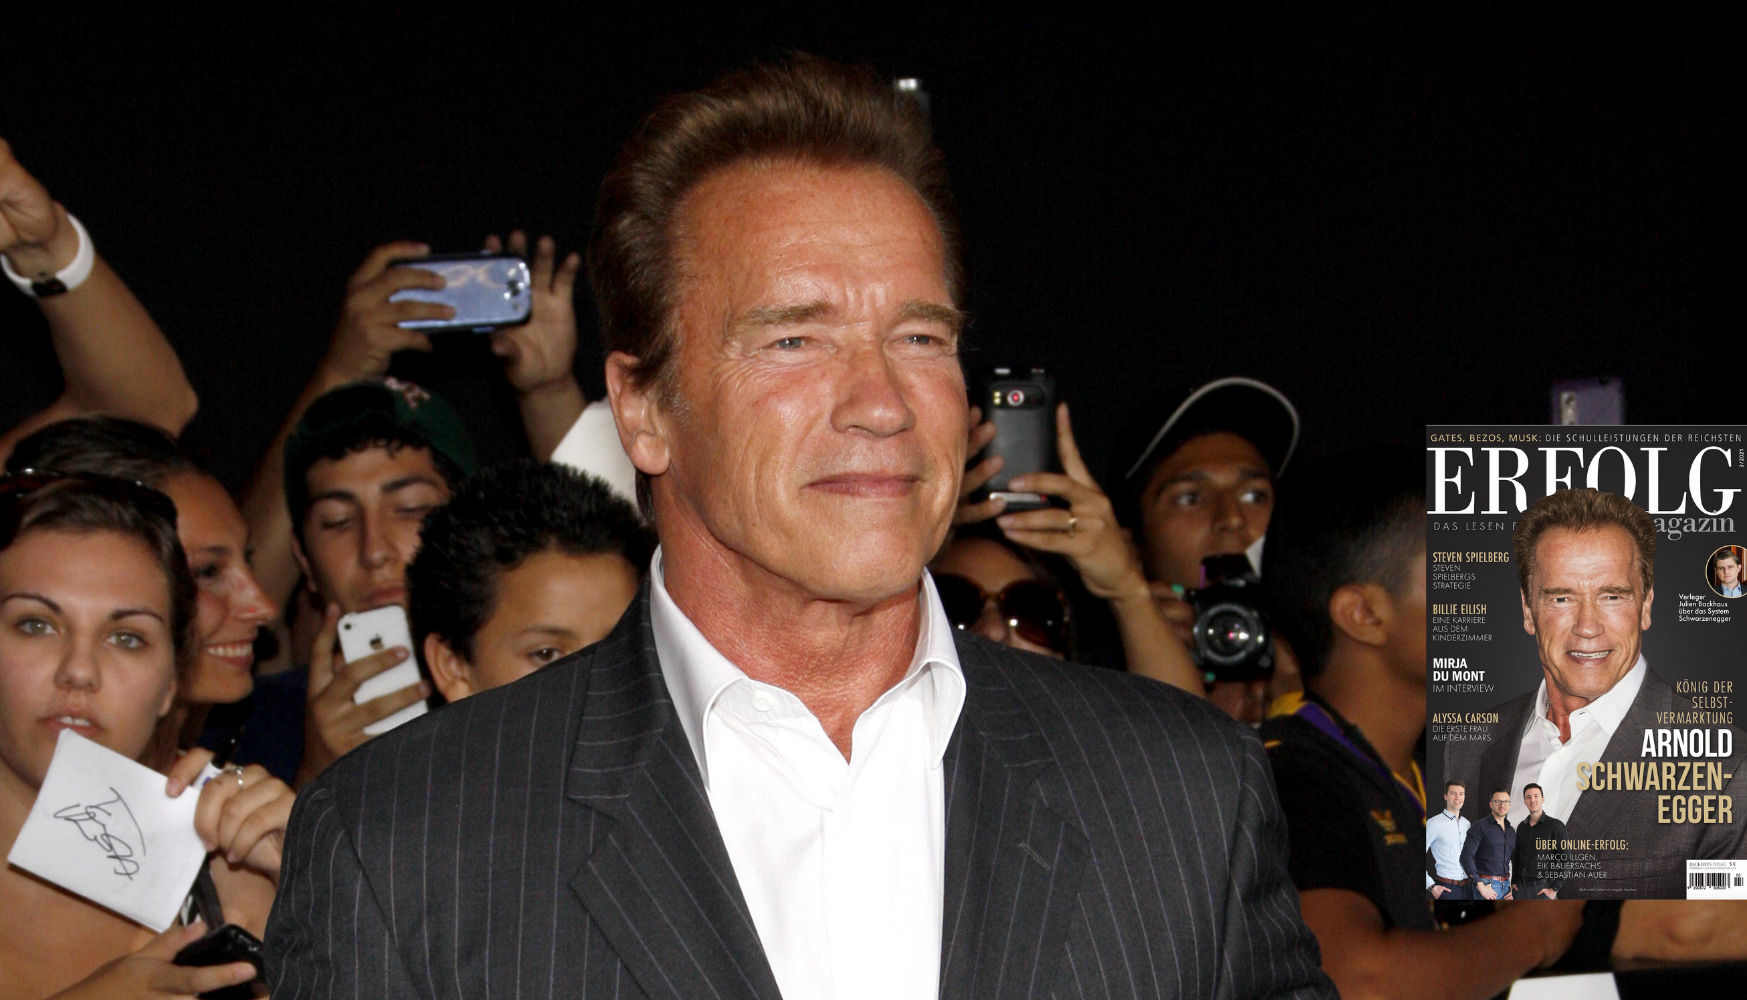 Arnold Schwarzenegger: König der Selbstvermarktung